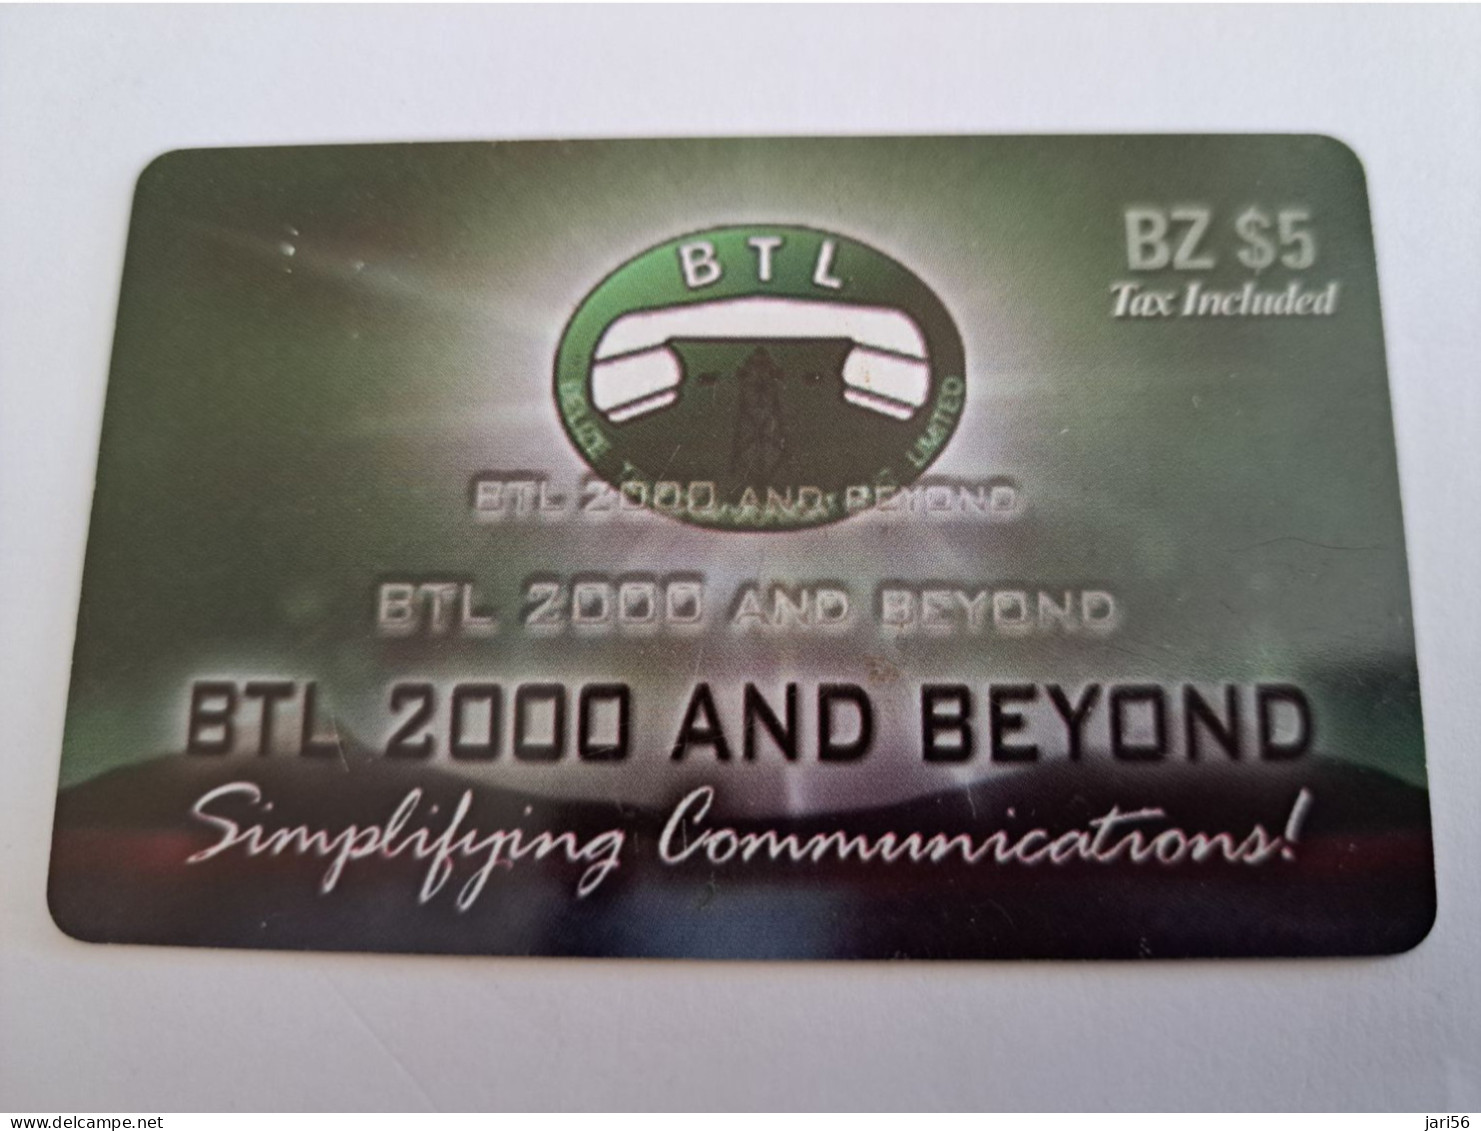 BELIZE Prepaid Card  $ 5 ,-/ BTL 2000 AND BEYOND / DIFF BACK   / PREPAID CELLULAIR SERVICE  BTL  /  Used Card  **15353** - Belice